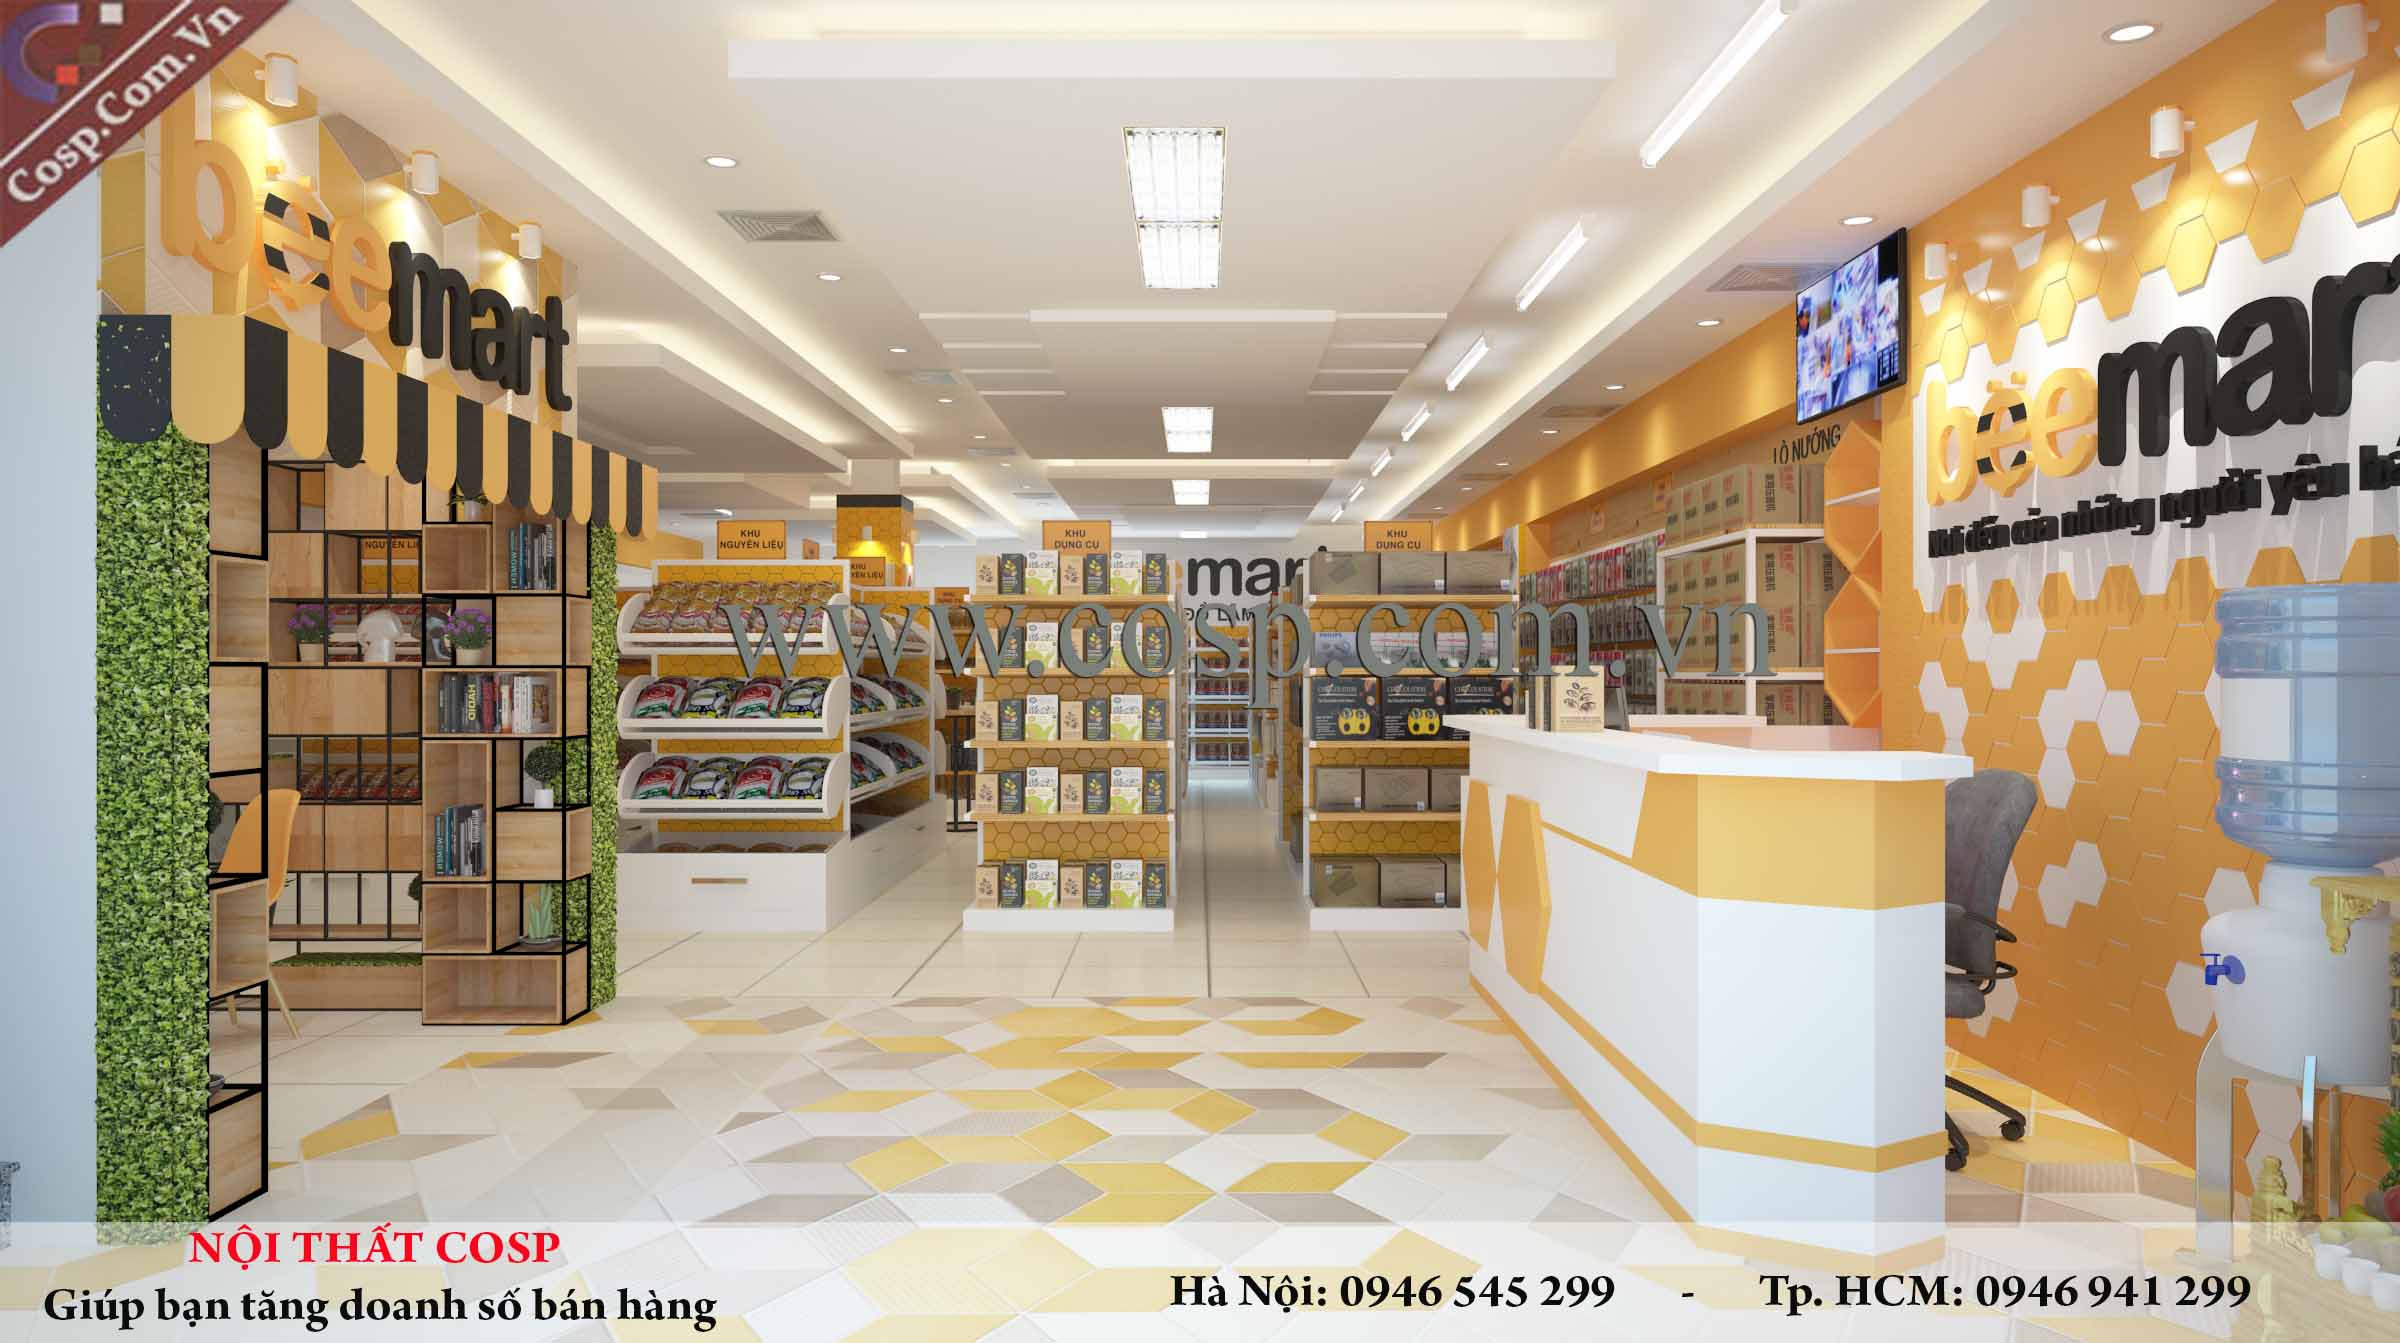 Thiết kế nội thất siêu thị Beemart - Nguyễn Khánh Toàn